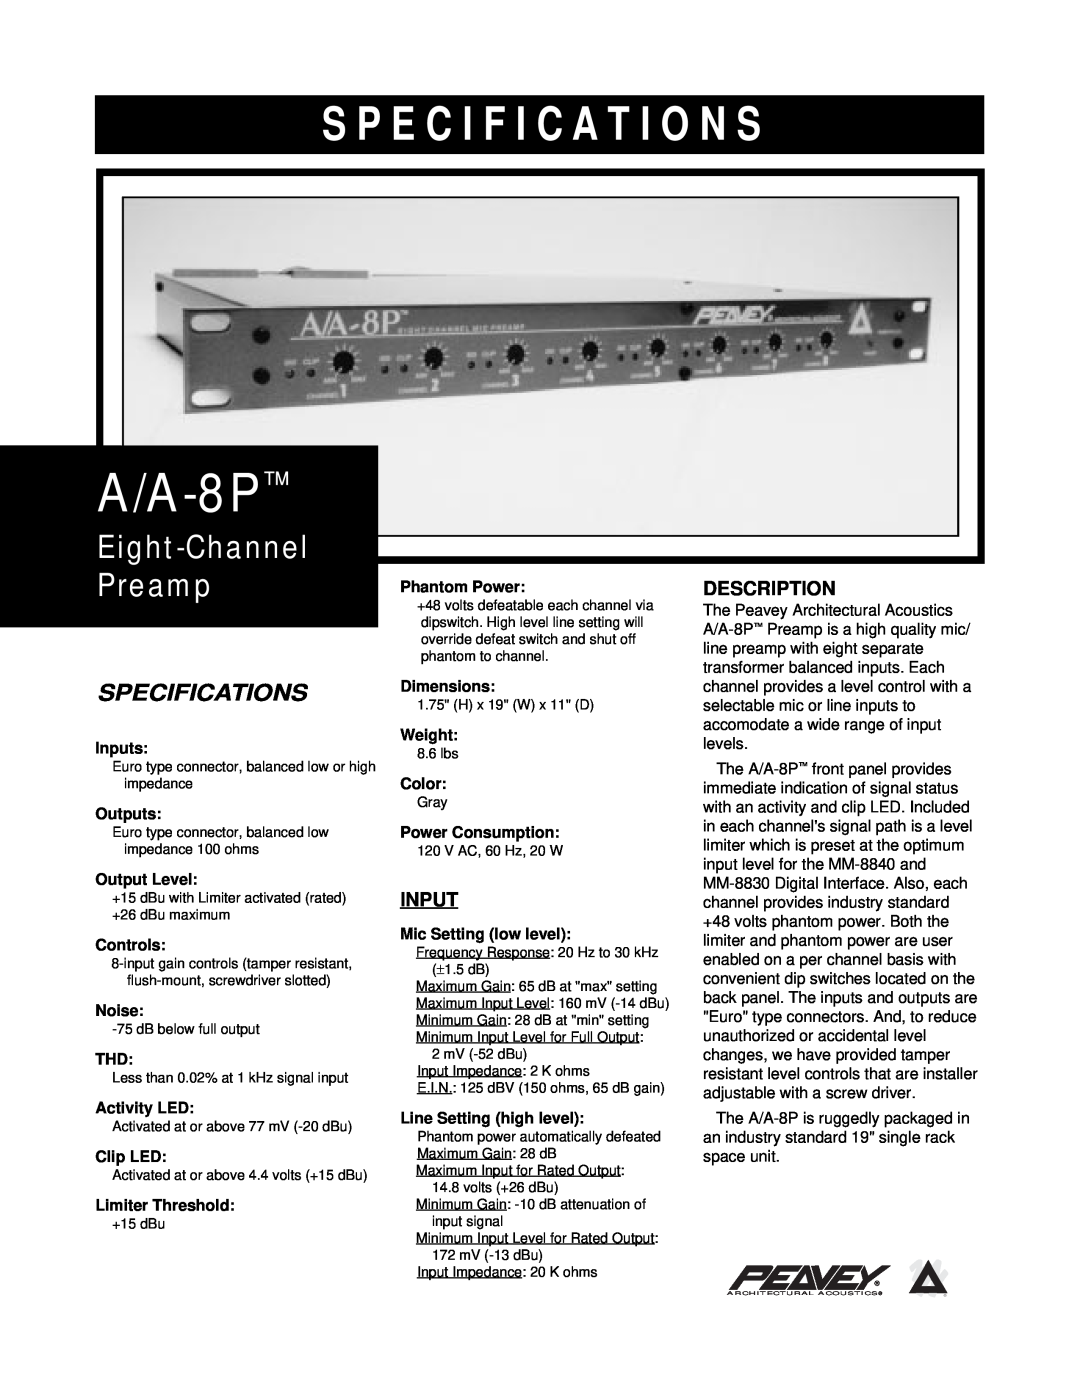 Peavey A/A-8P specifications Description, Input, S P E C I F I C A T I O N S, Eight-Channel, Preamp, Specifications 